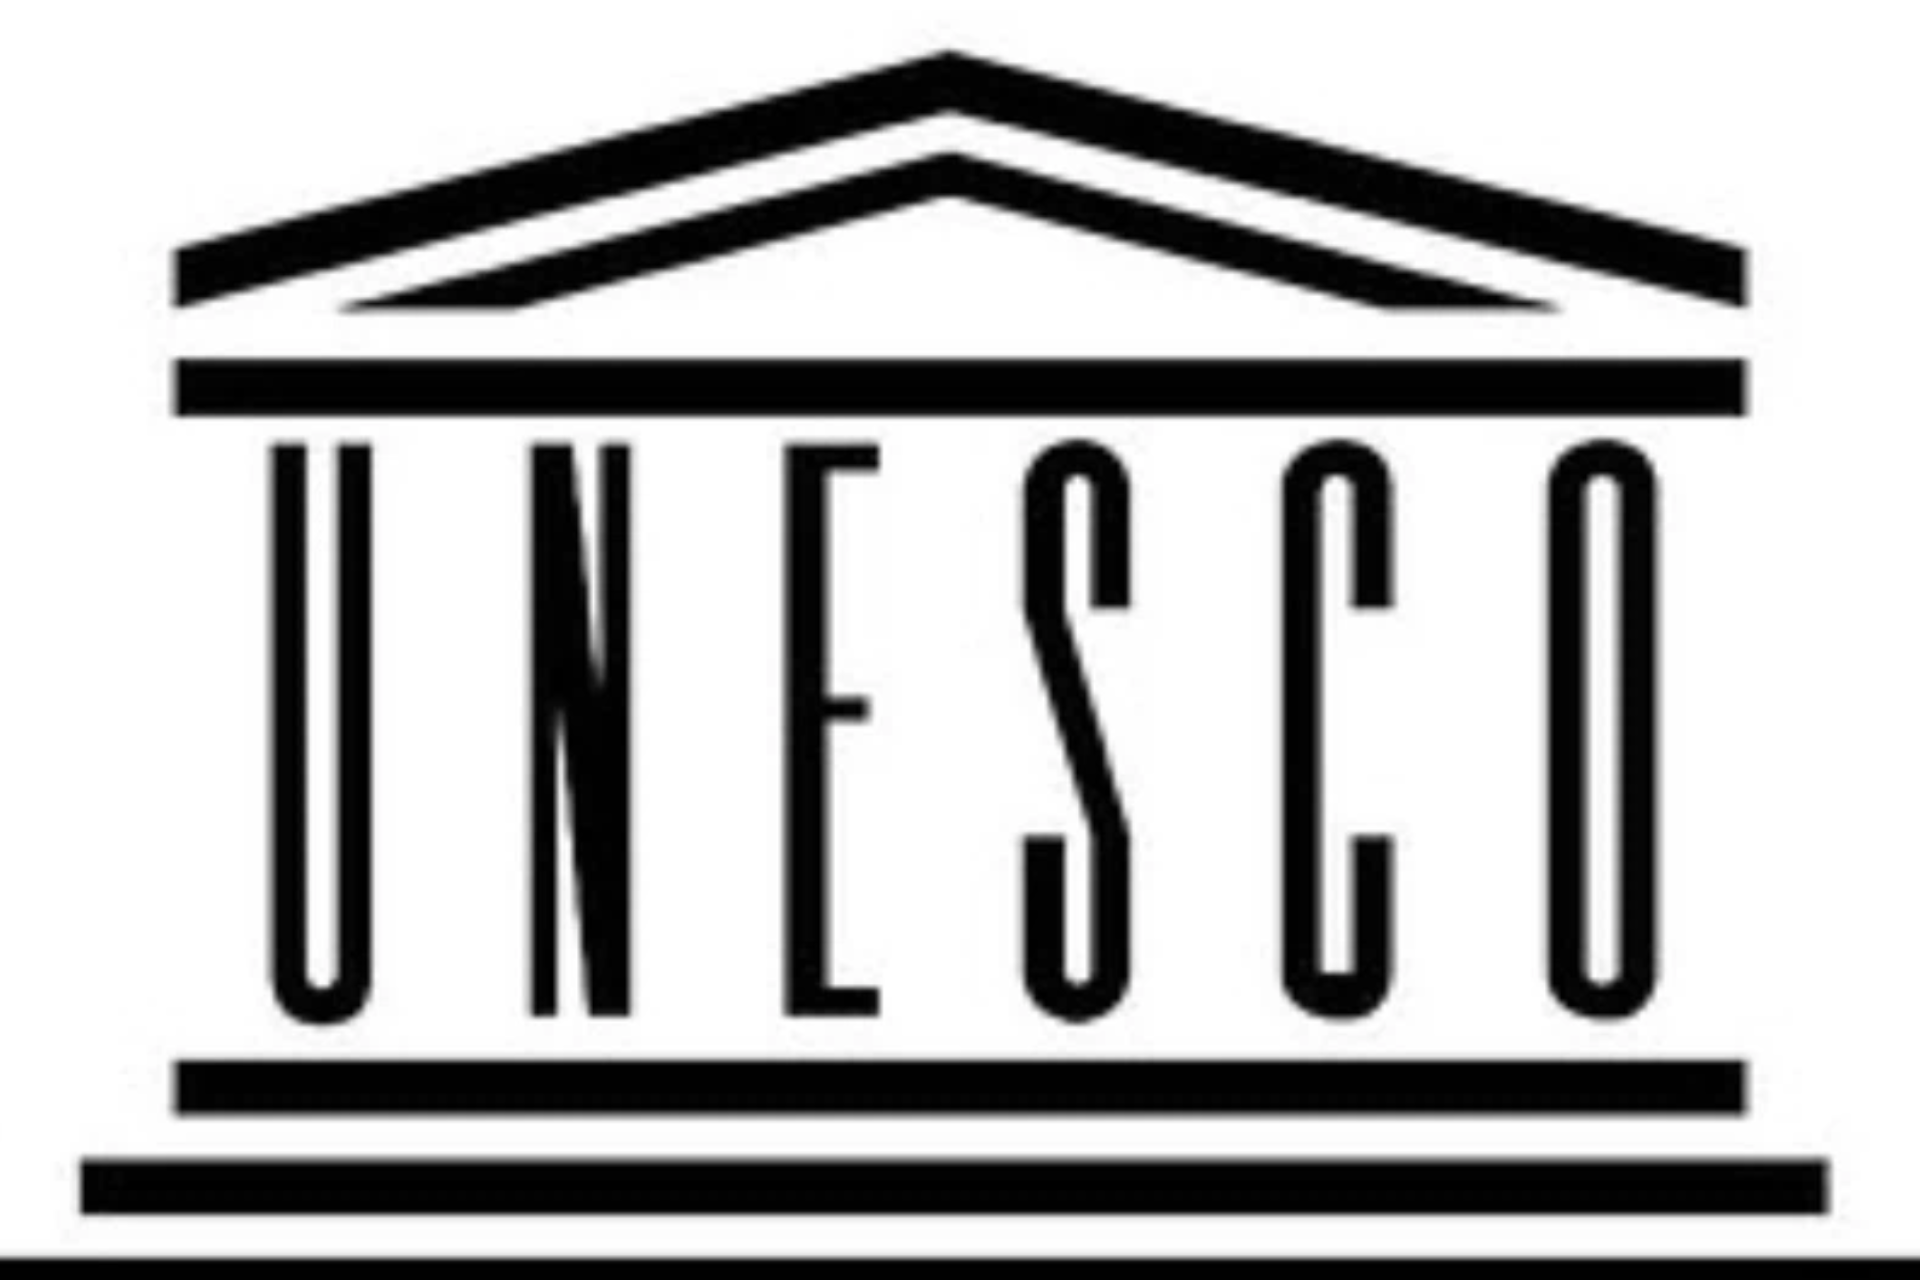 UNESCO Uganda tombs